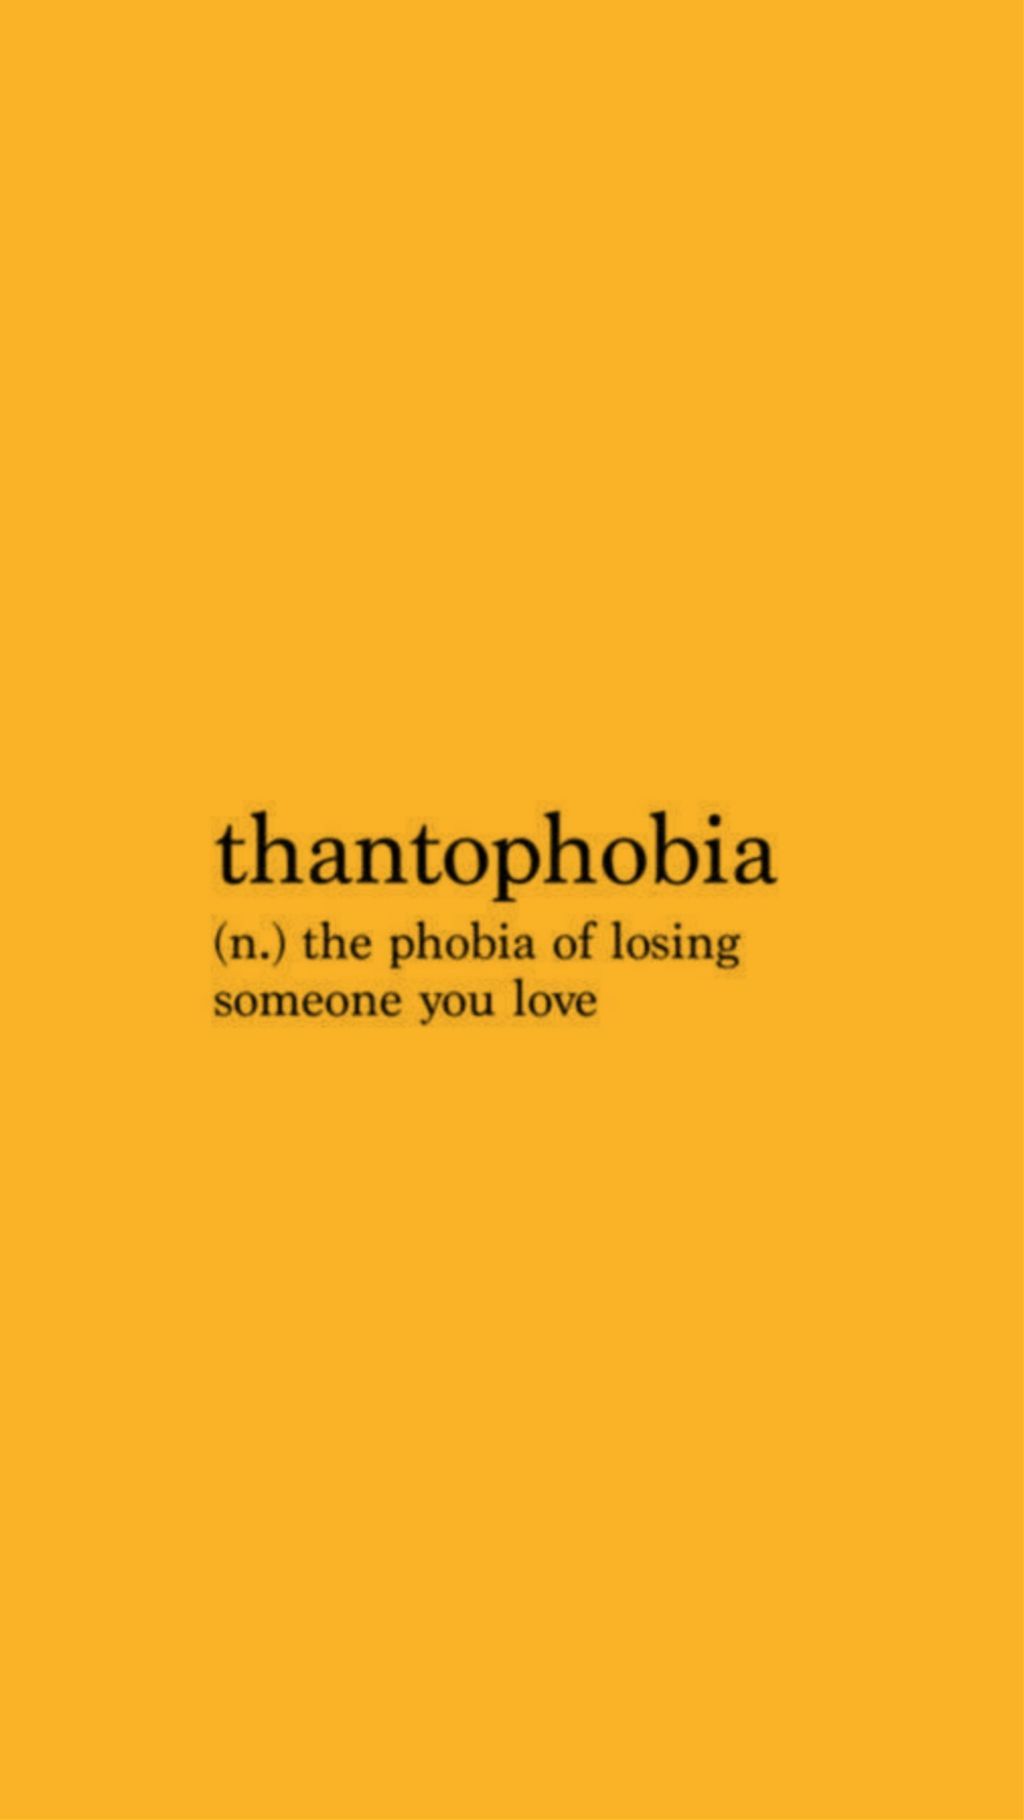 Thantophobia, aesthetic yellow wallpaper